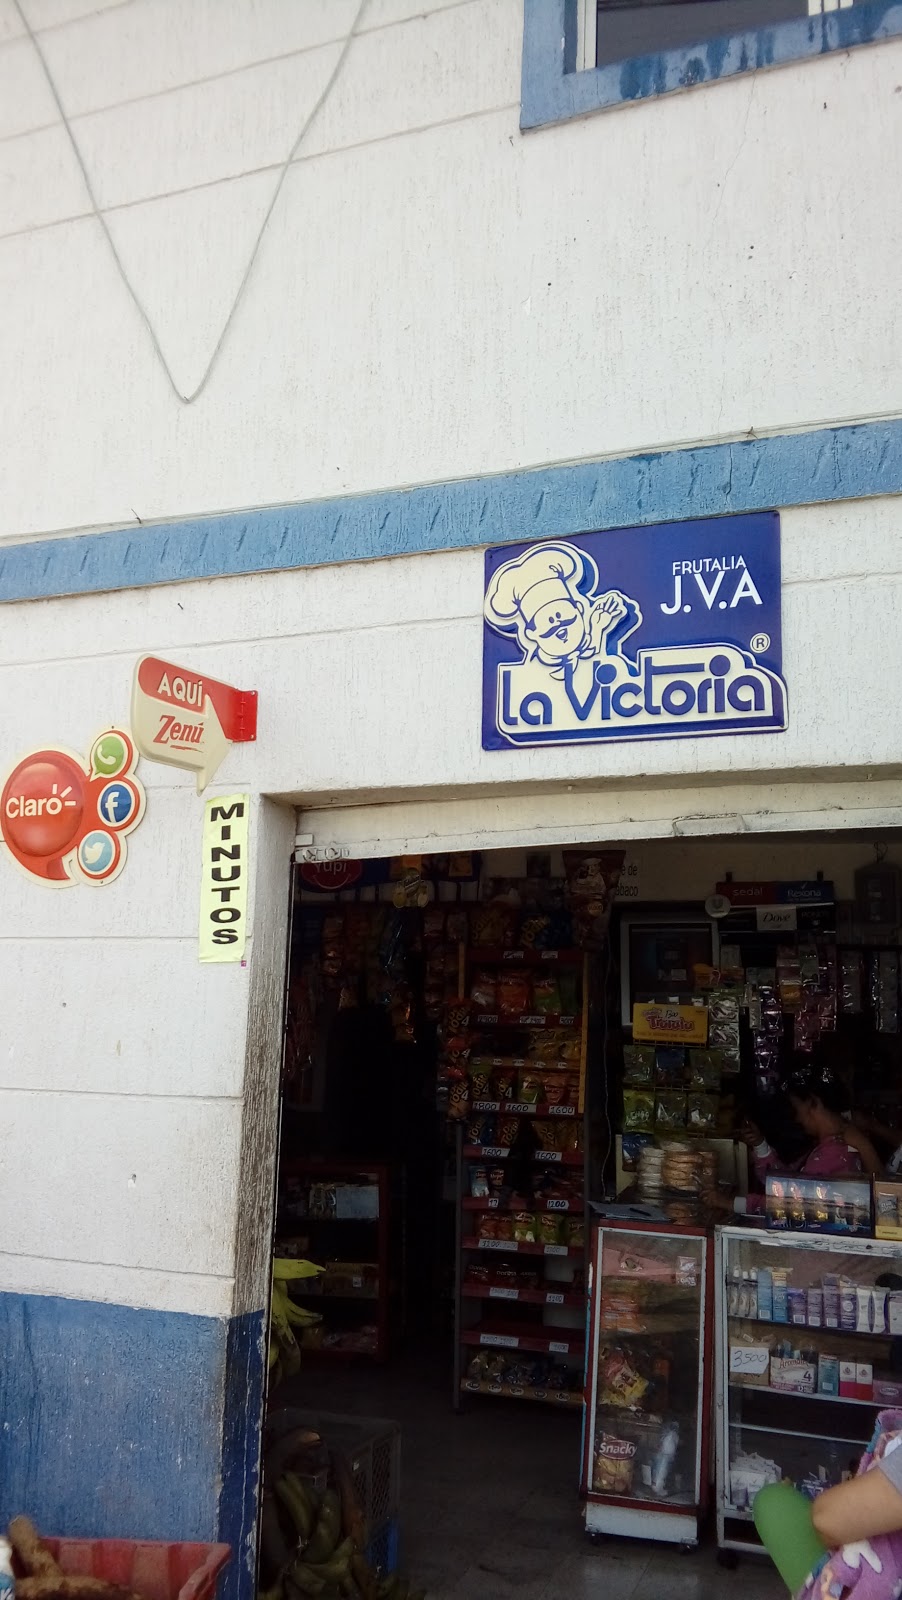 Frutalia J.V.A La Victoria